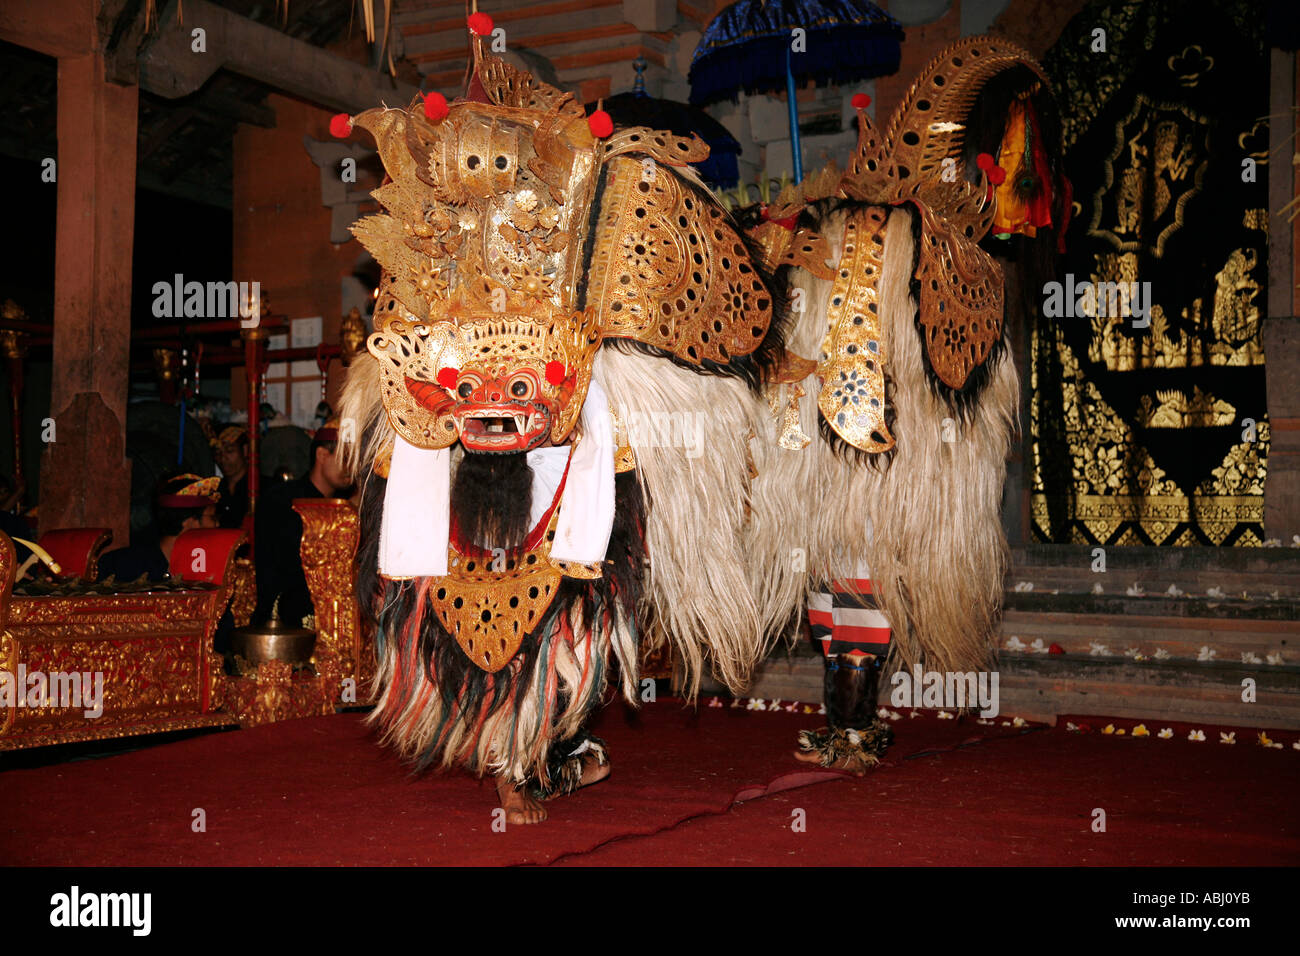 Balinese legong dancer in animal costume, Ubud, Bali, Indonesia Stock Photo